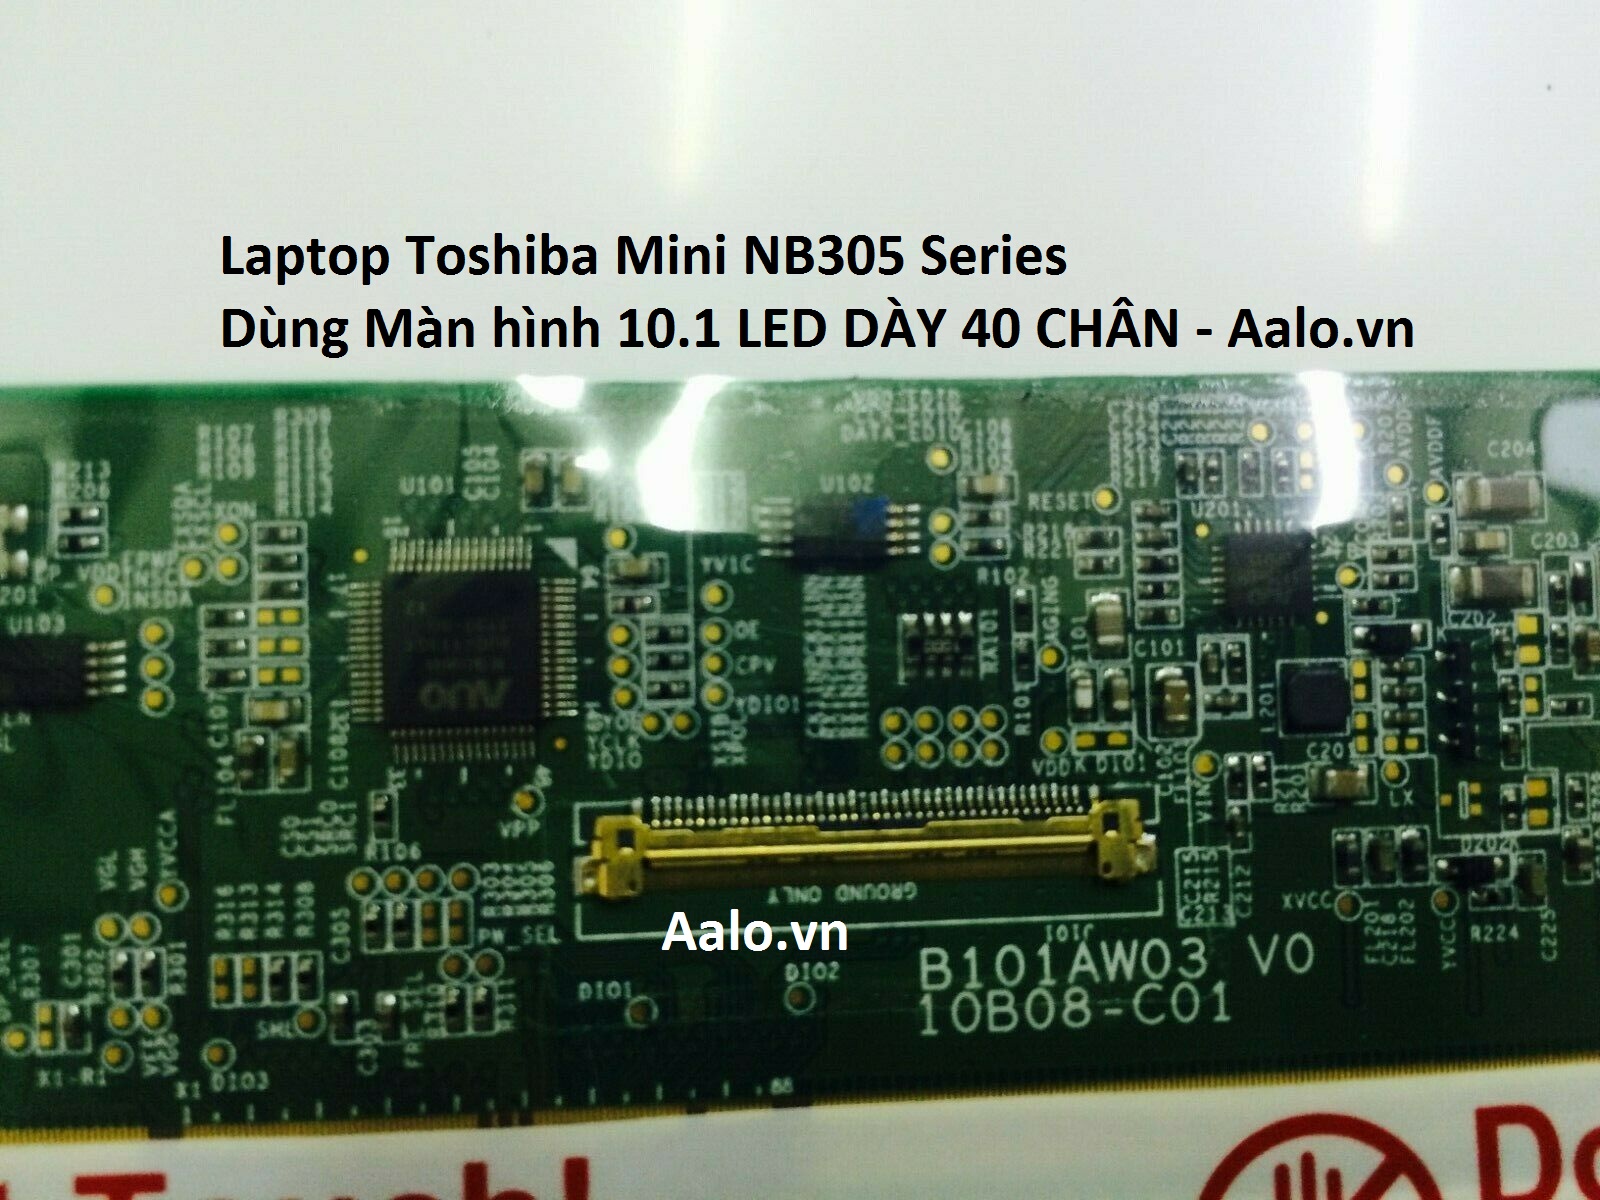 Màn hình Laptop Toshiba Mini NB305 Series - Aalo.vn